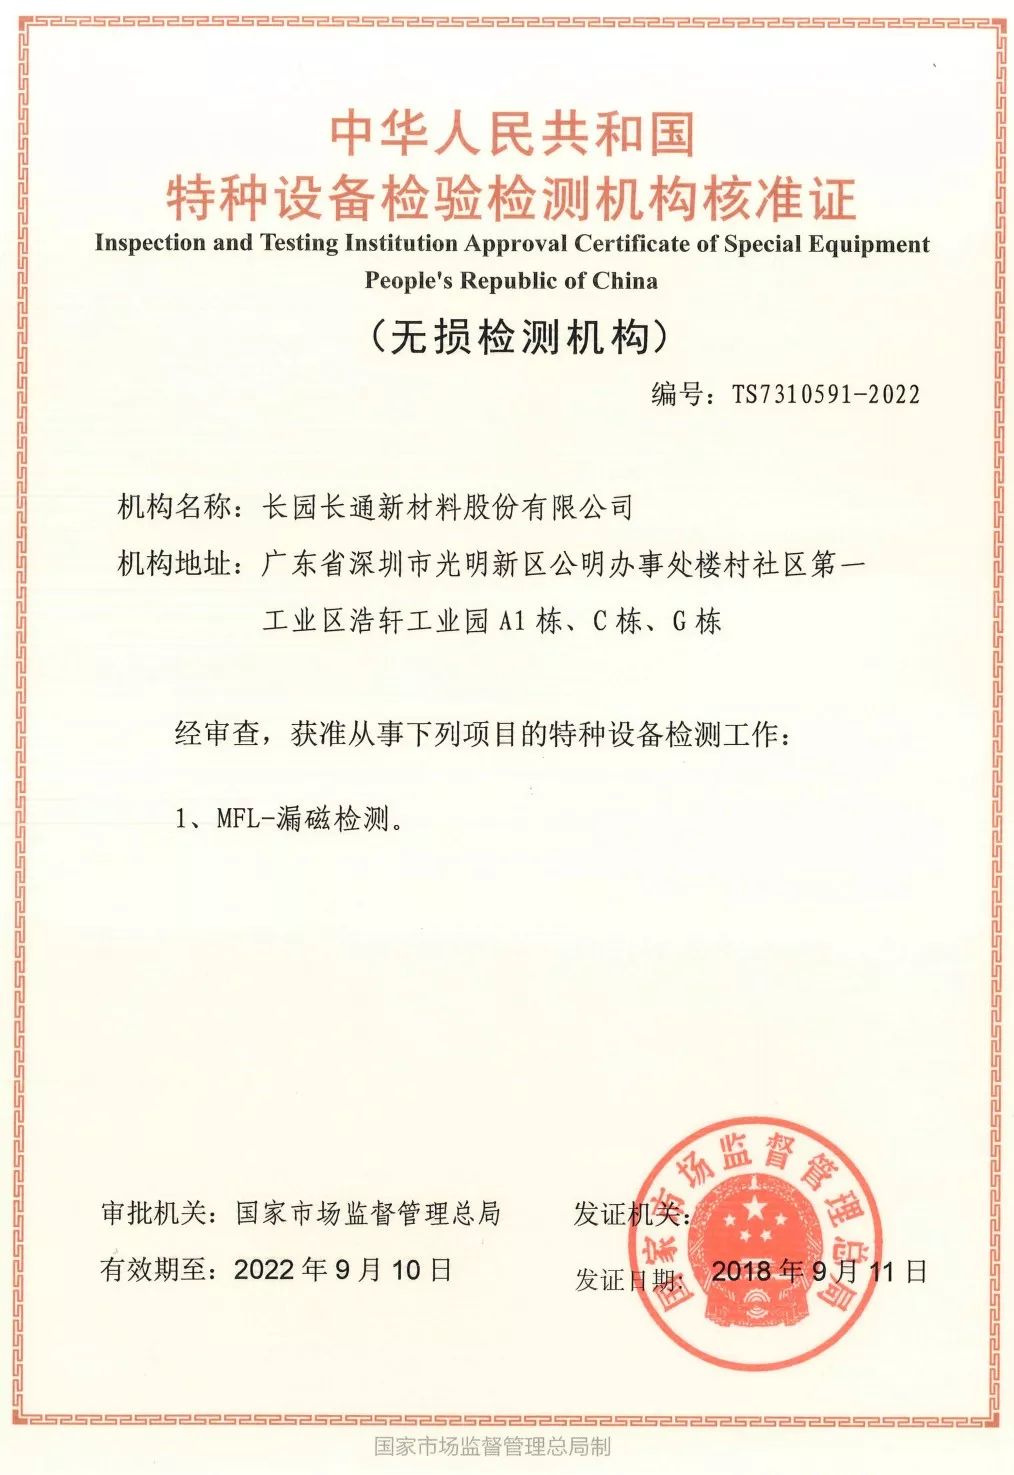 《中国特种设备检验检测机构核准证(无损检测机构)》证书编号:ts